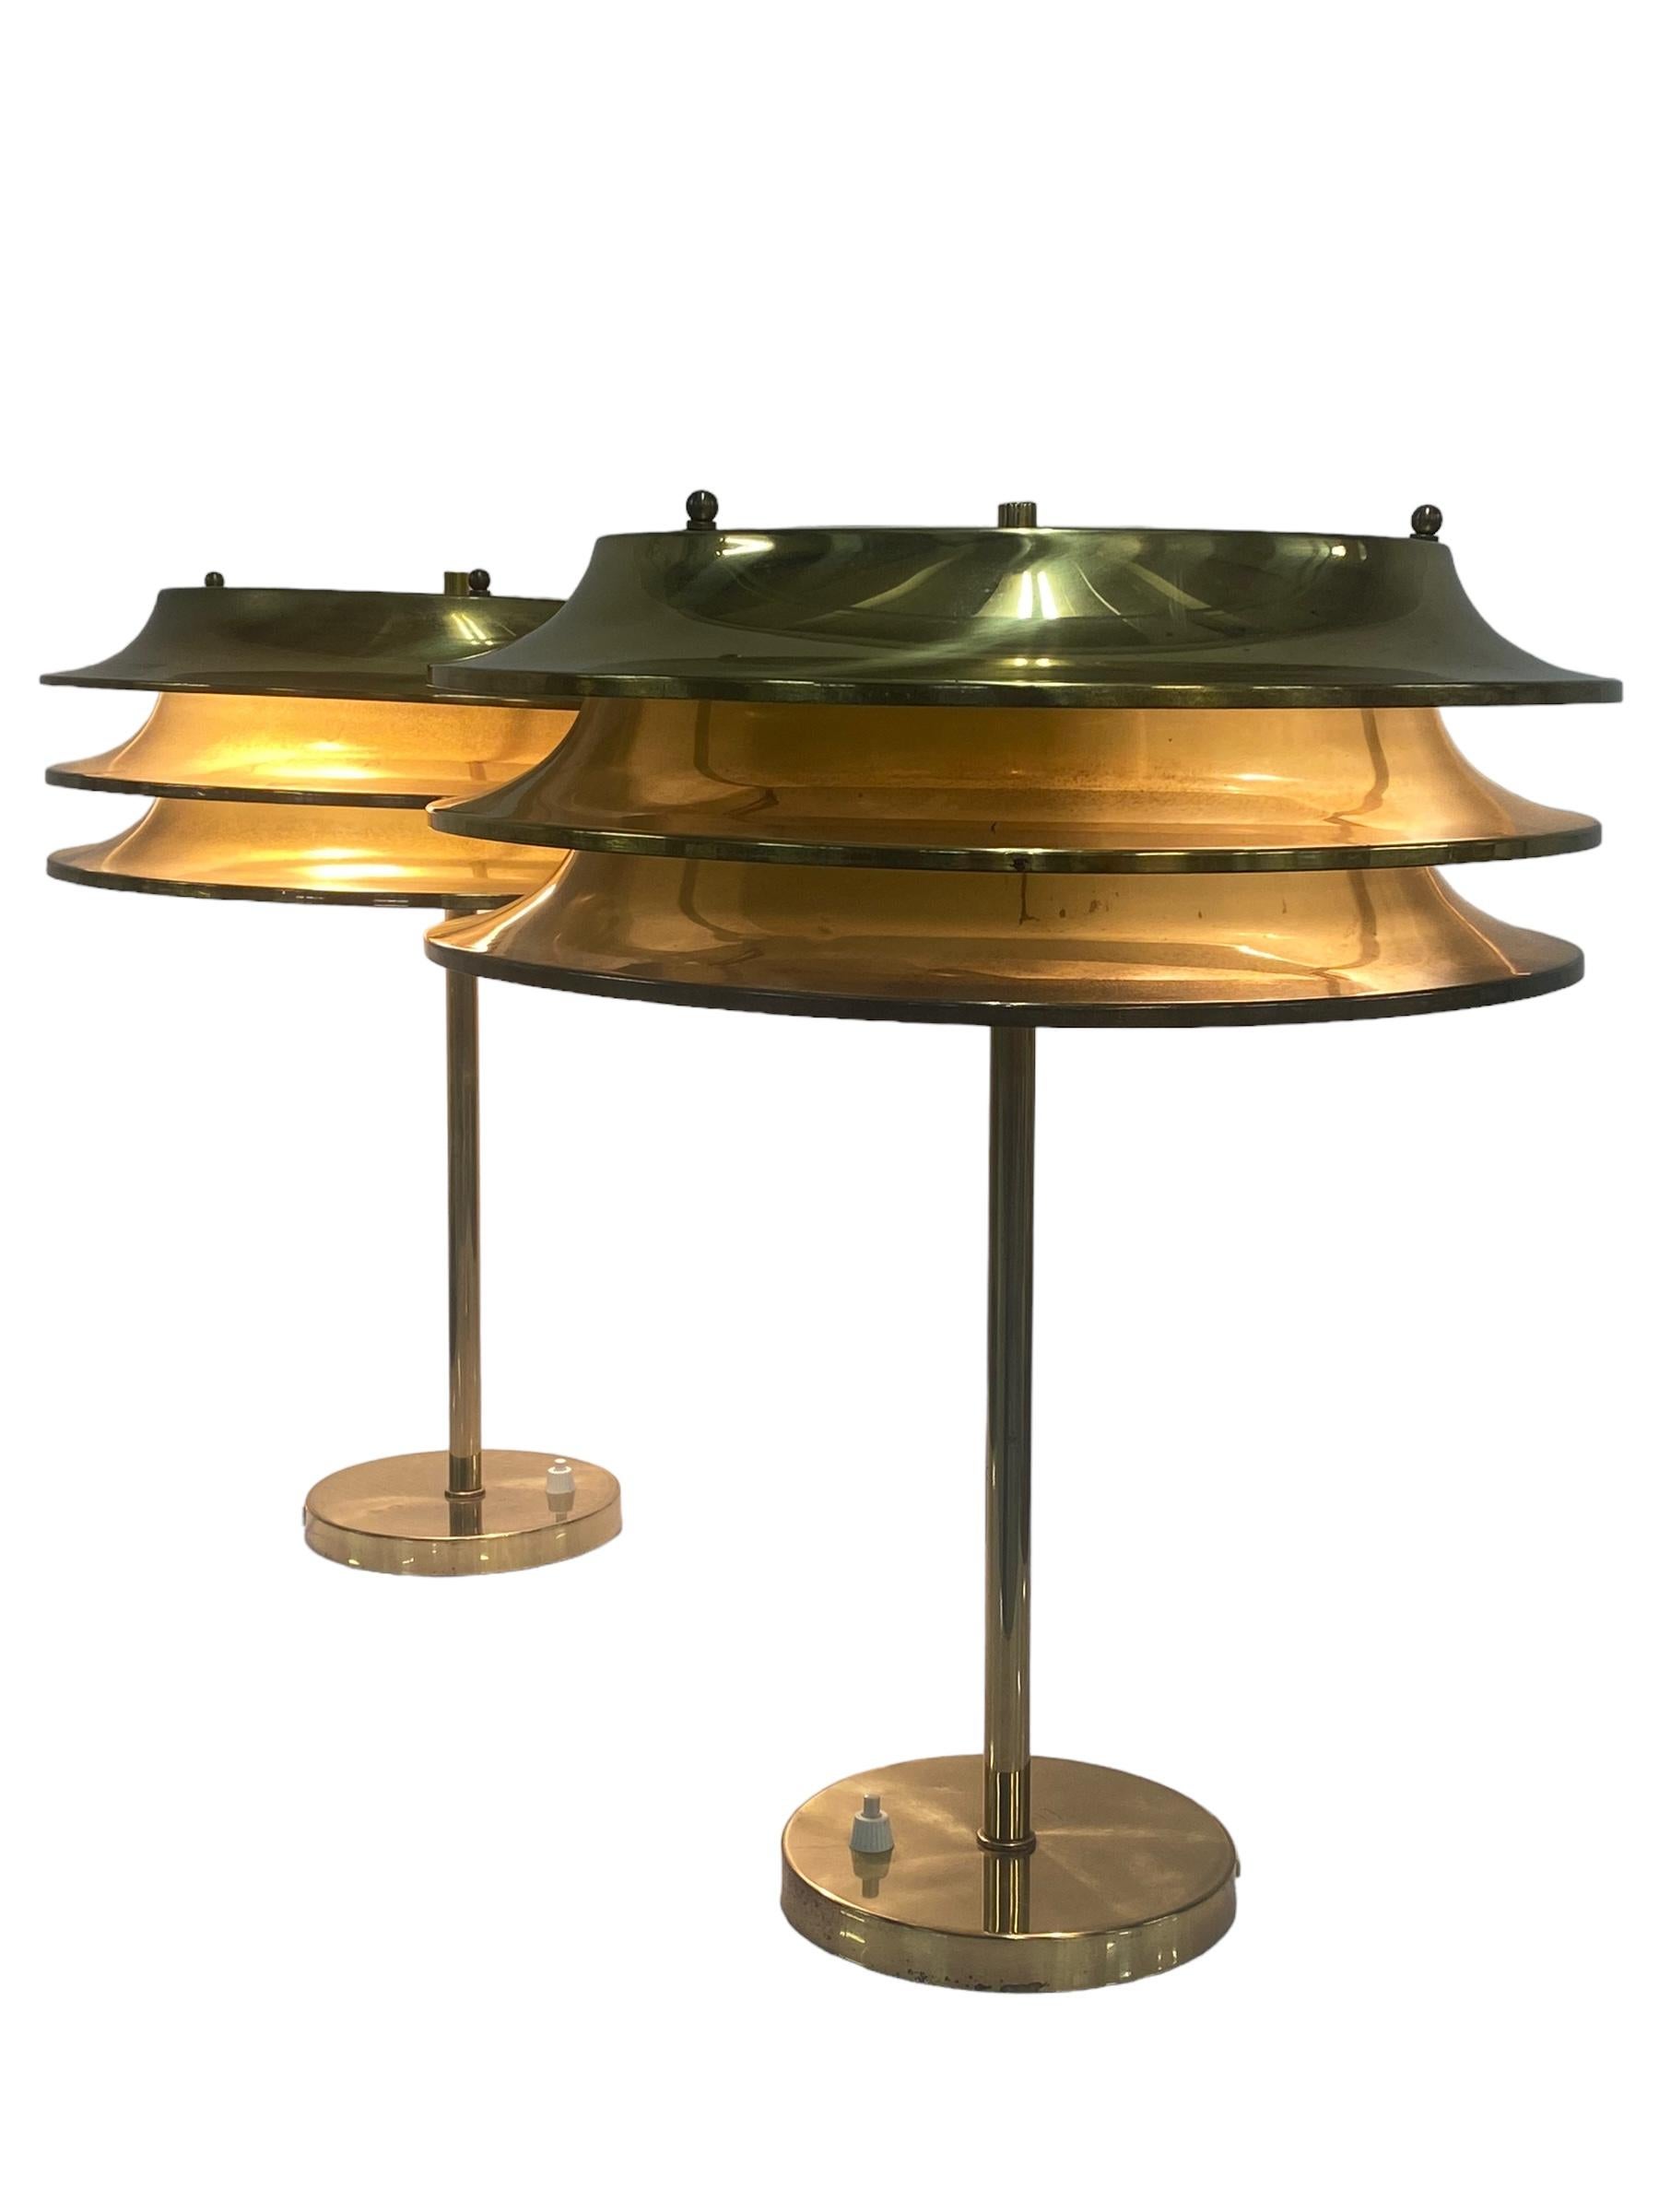 Dieses Lampenpaar wurde von Kai Ruokonen entworfen, ursprünglich für das Vaakuna Hotel in Helsinki in den 1970er Jahren. Das gleiche Modell wurde später auch im Palace Hotel Helsinki verwendet. Sehr schlichte, aber elegante Schwerlastlampen aus